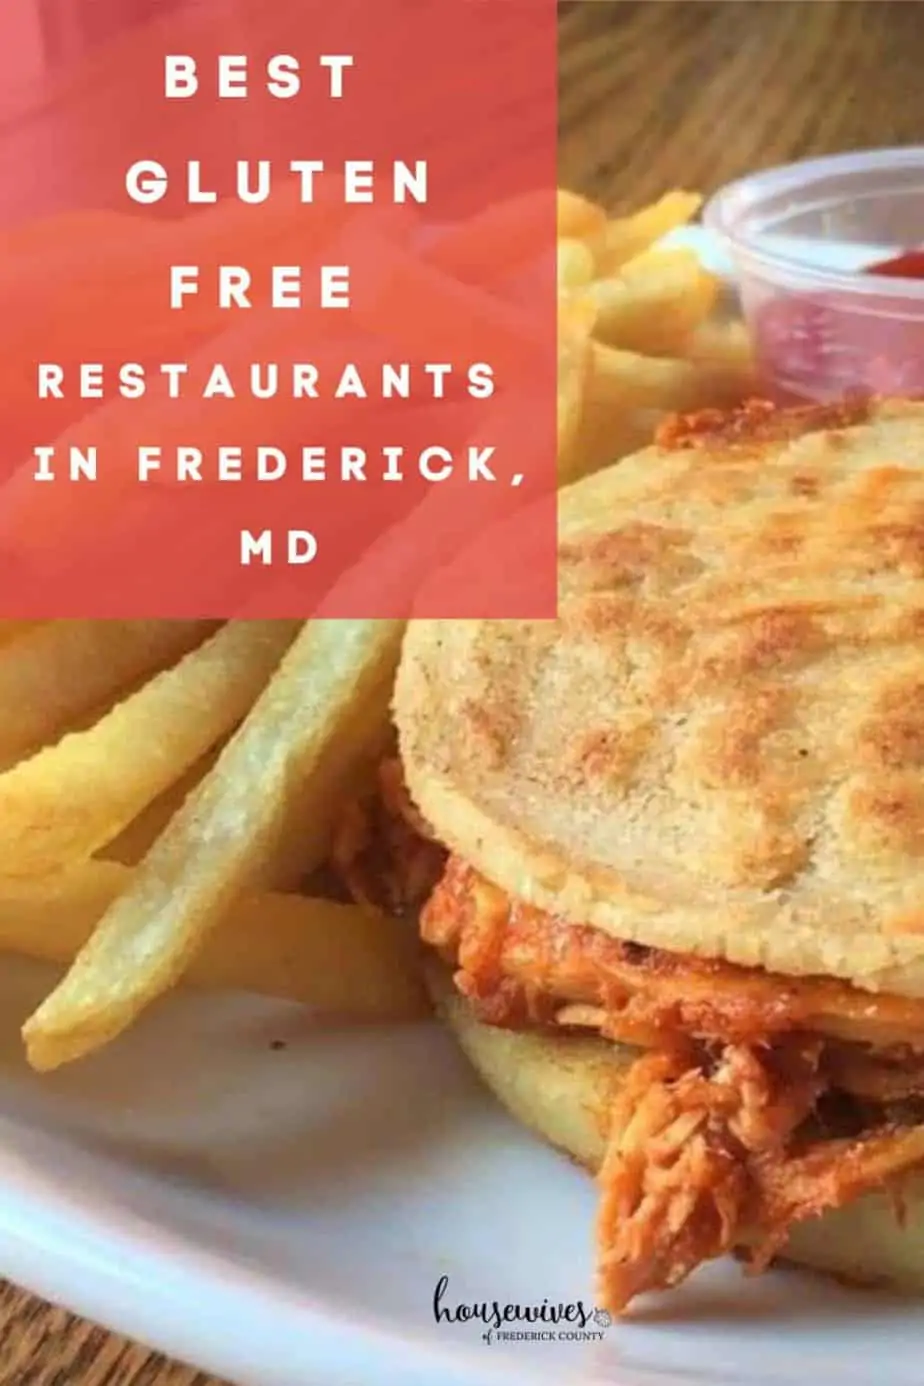 Best Gluten Free Restaurants in Frederick MD